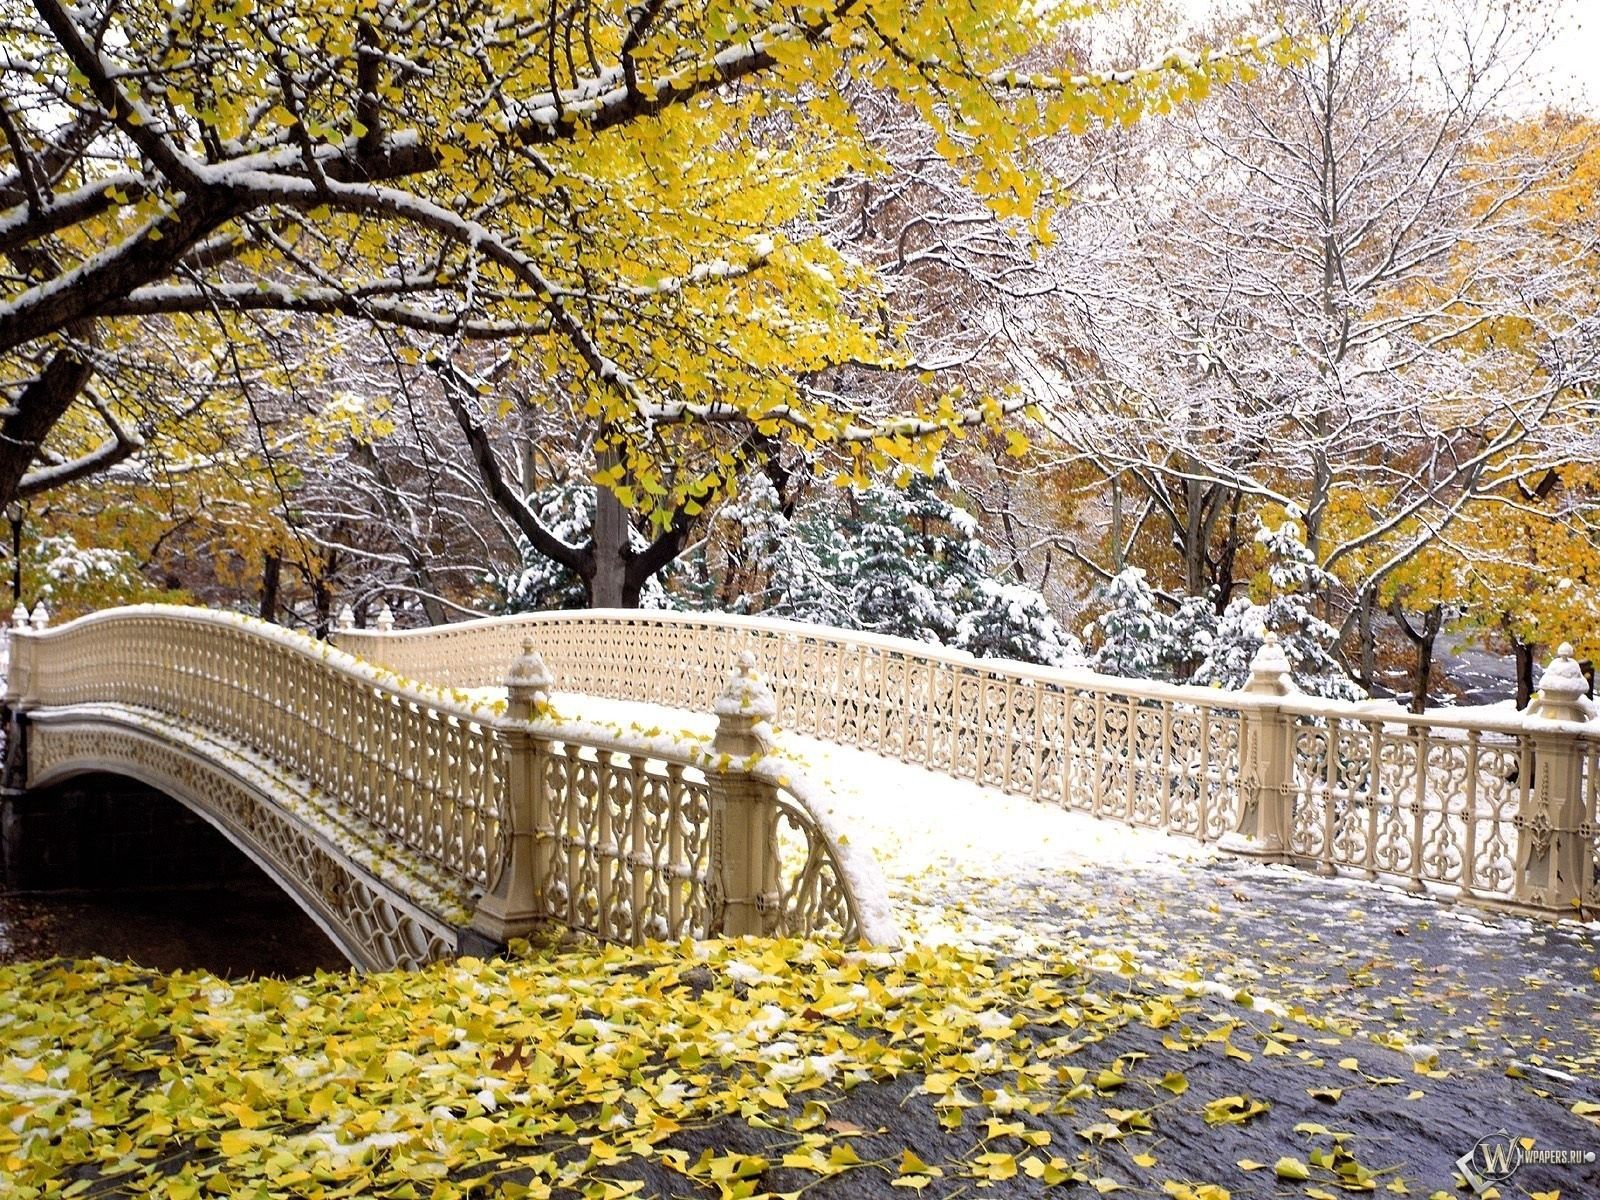 Скачать обои бесплатно Снег, Мост, Природа, Парк, Листья, Осень картинка на рабочий стол ПК